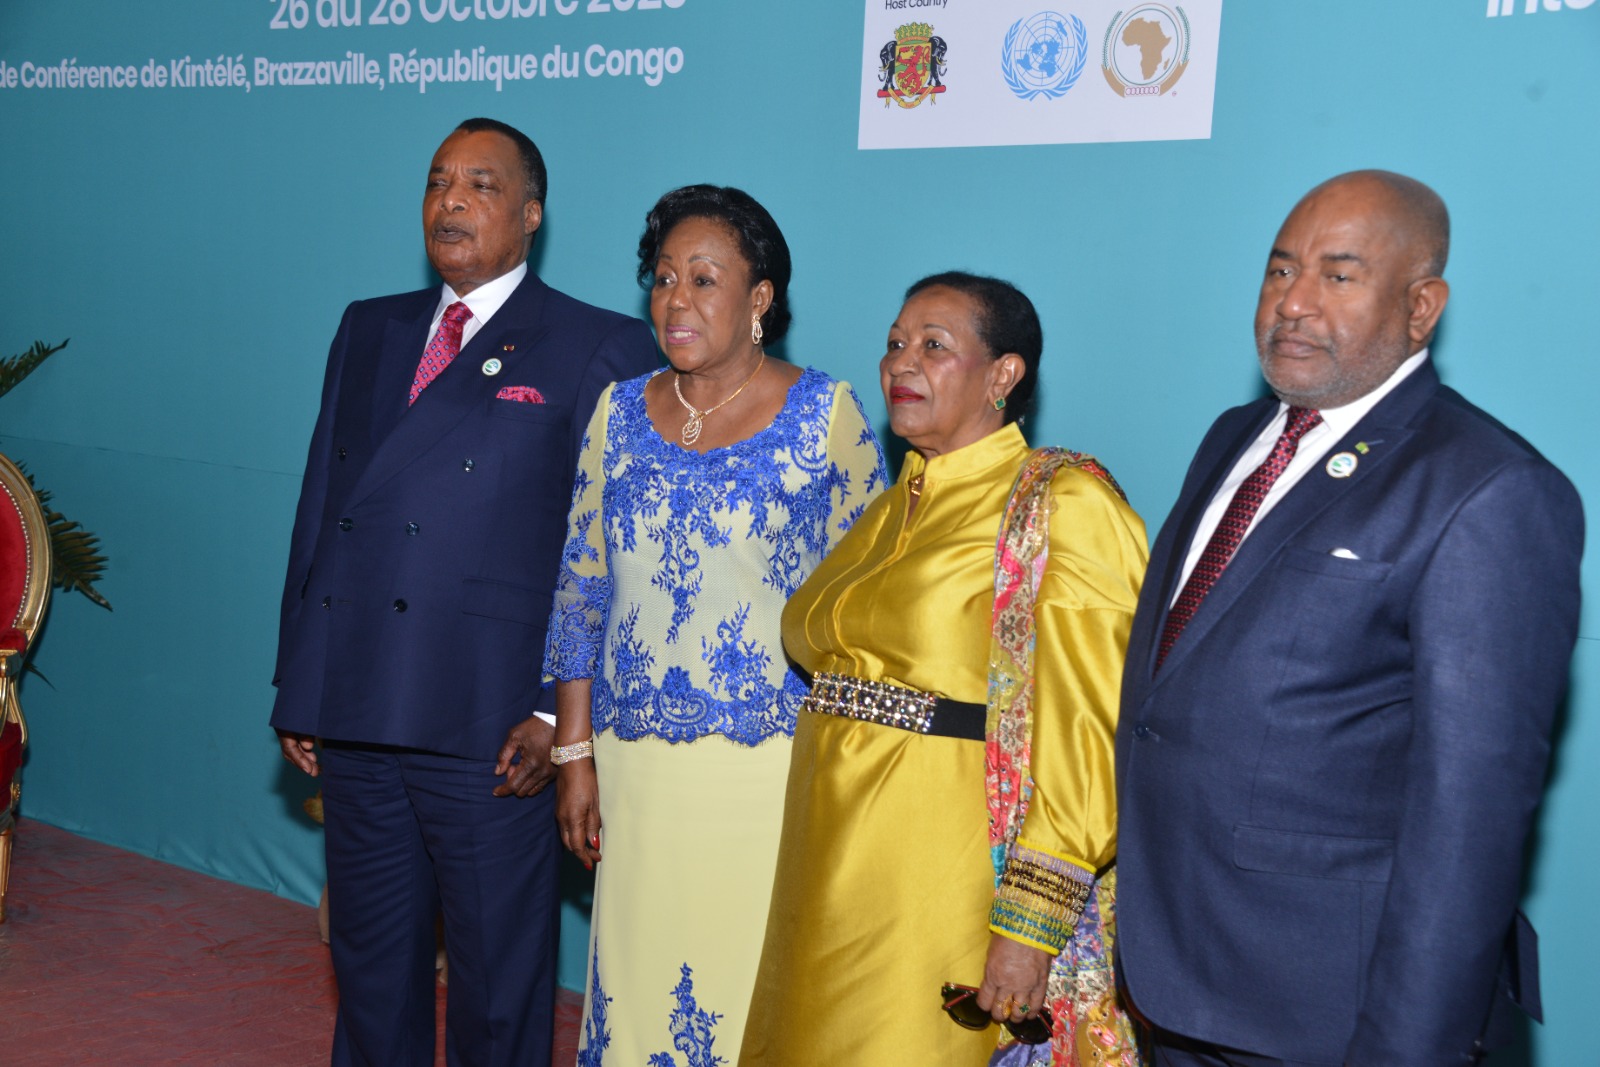 Présidentielles aux Comores : des félicitations de Denis Sassou N’Guesso à Azali Assoumani pour sa réélection